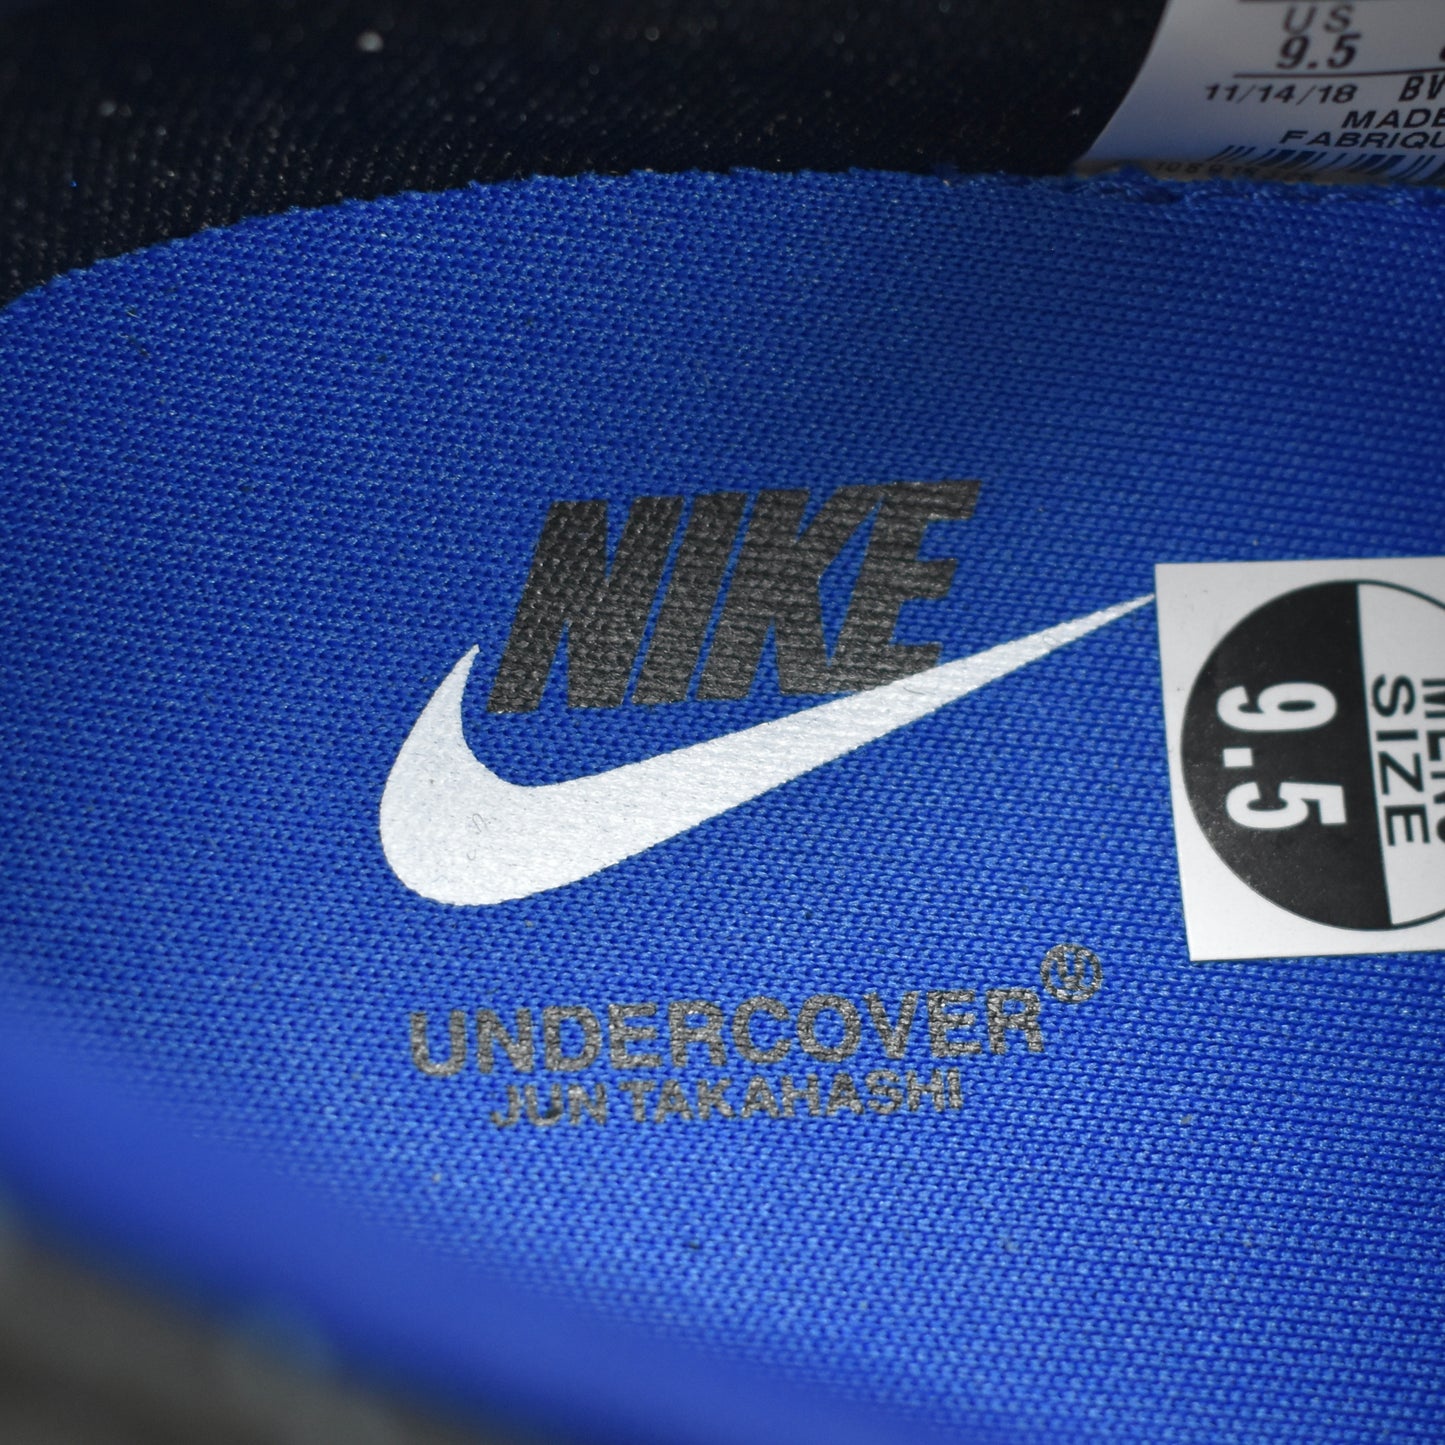 Nike x Undercover - Daybreak Sneakers (Blue Jay)